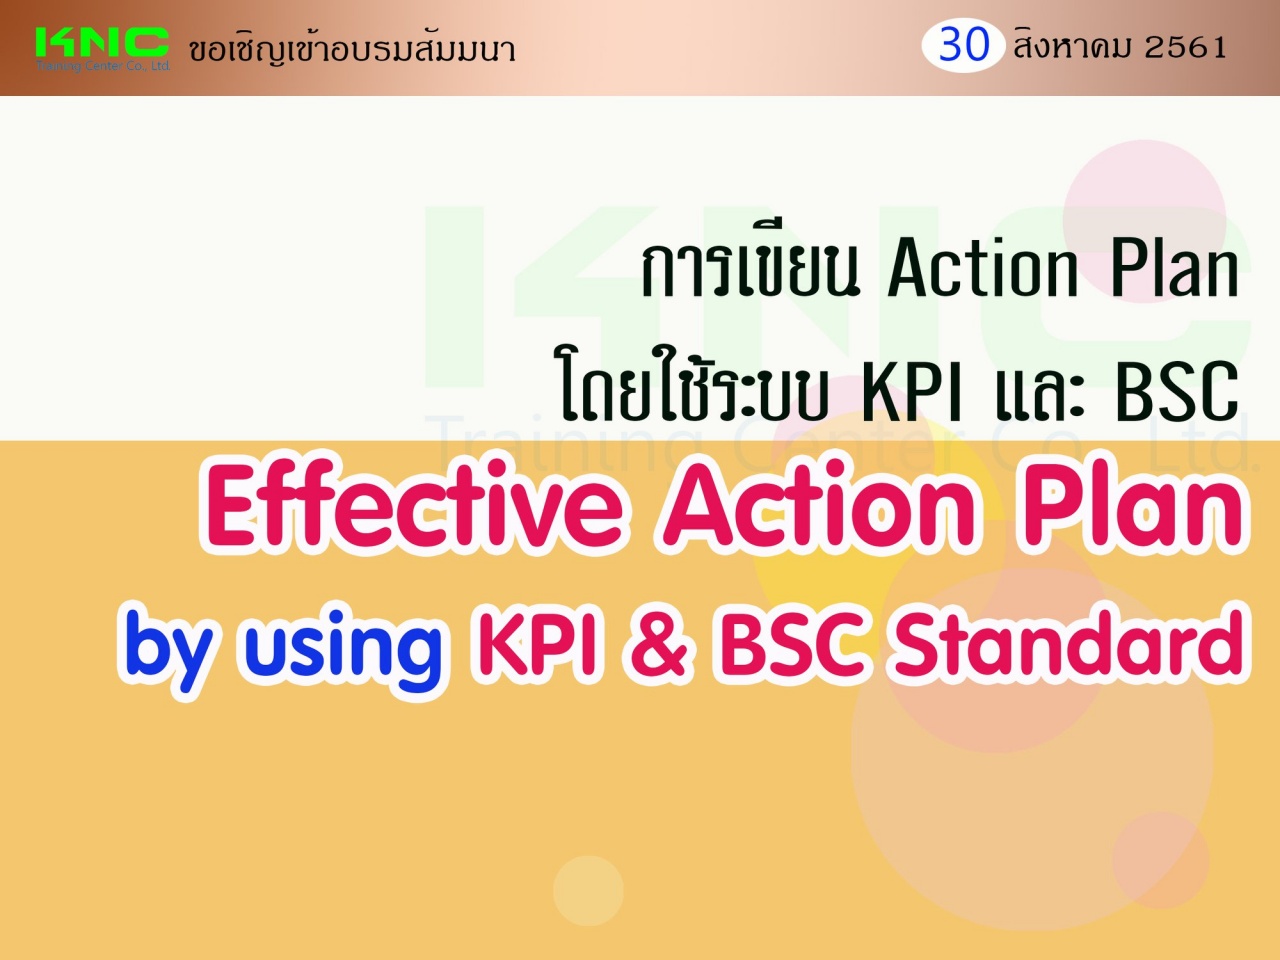 การเขียน Action Plan โดยใช้ระบบ KPI และ BSC